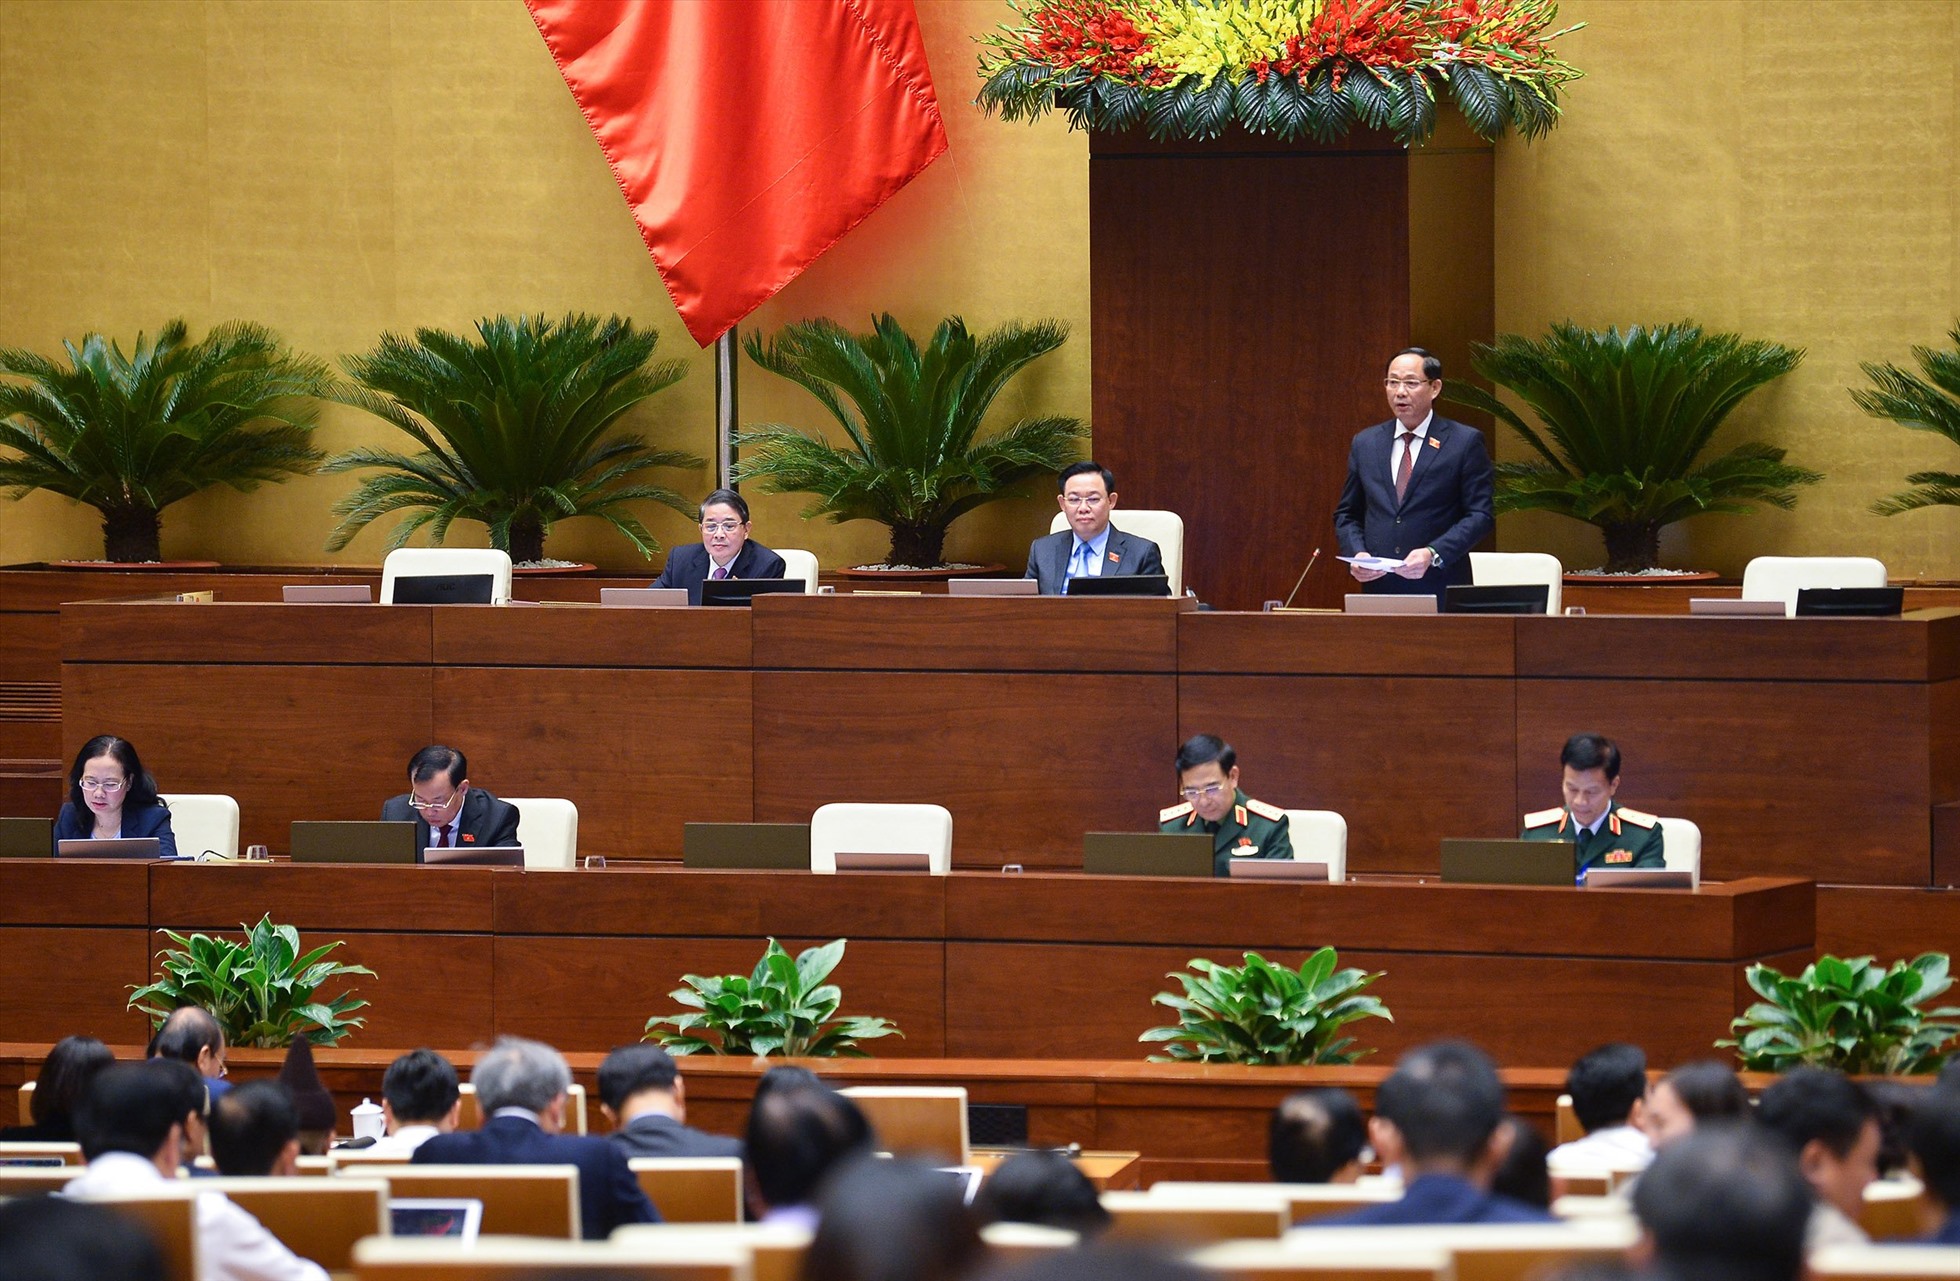 Phó Chủ tịch Quốc hội Trần Quang Phương điều hành nội dung thảo luận.